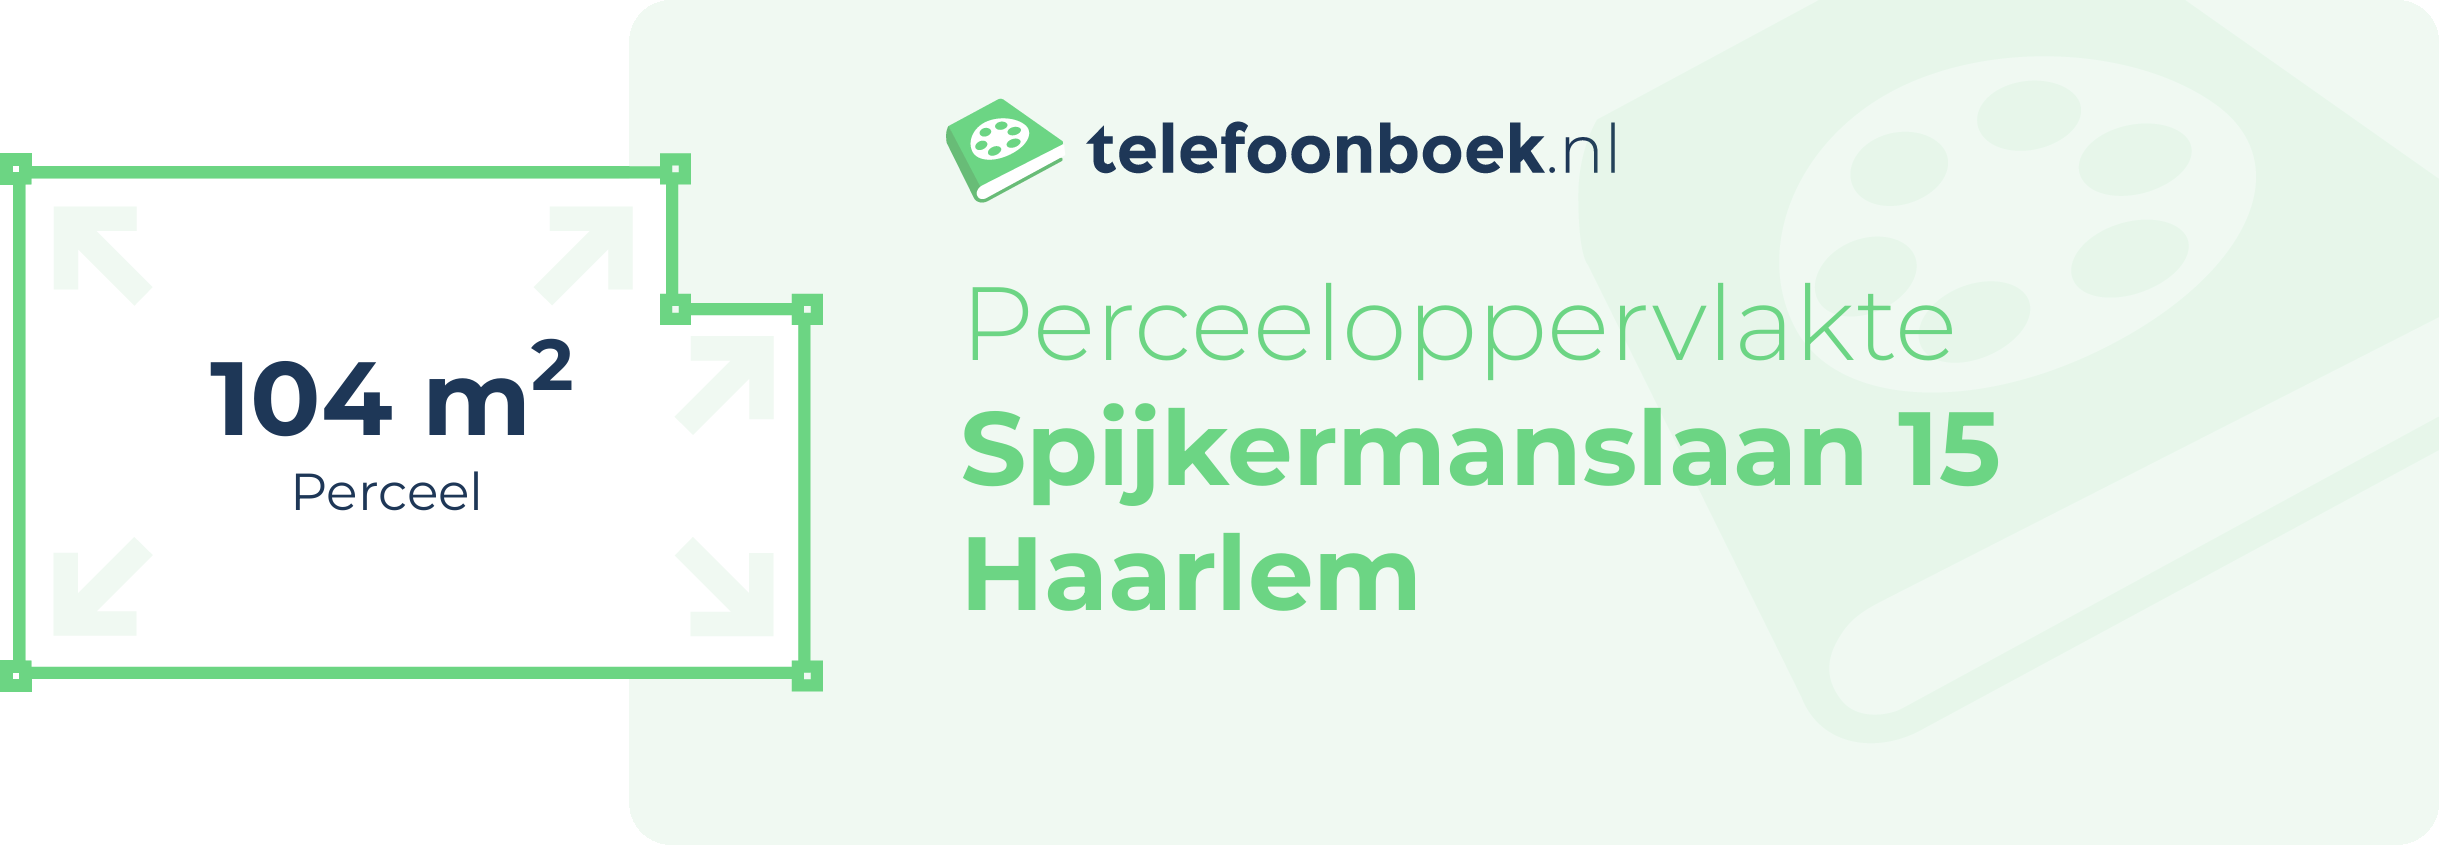 Perceeloppervlakte Spijkermanslaan 15 Haarlem